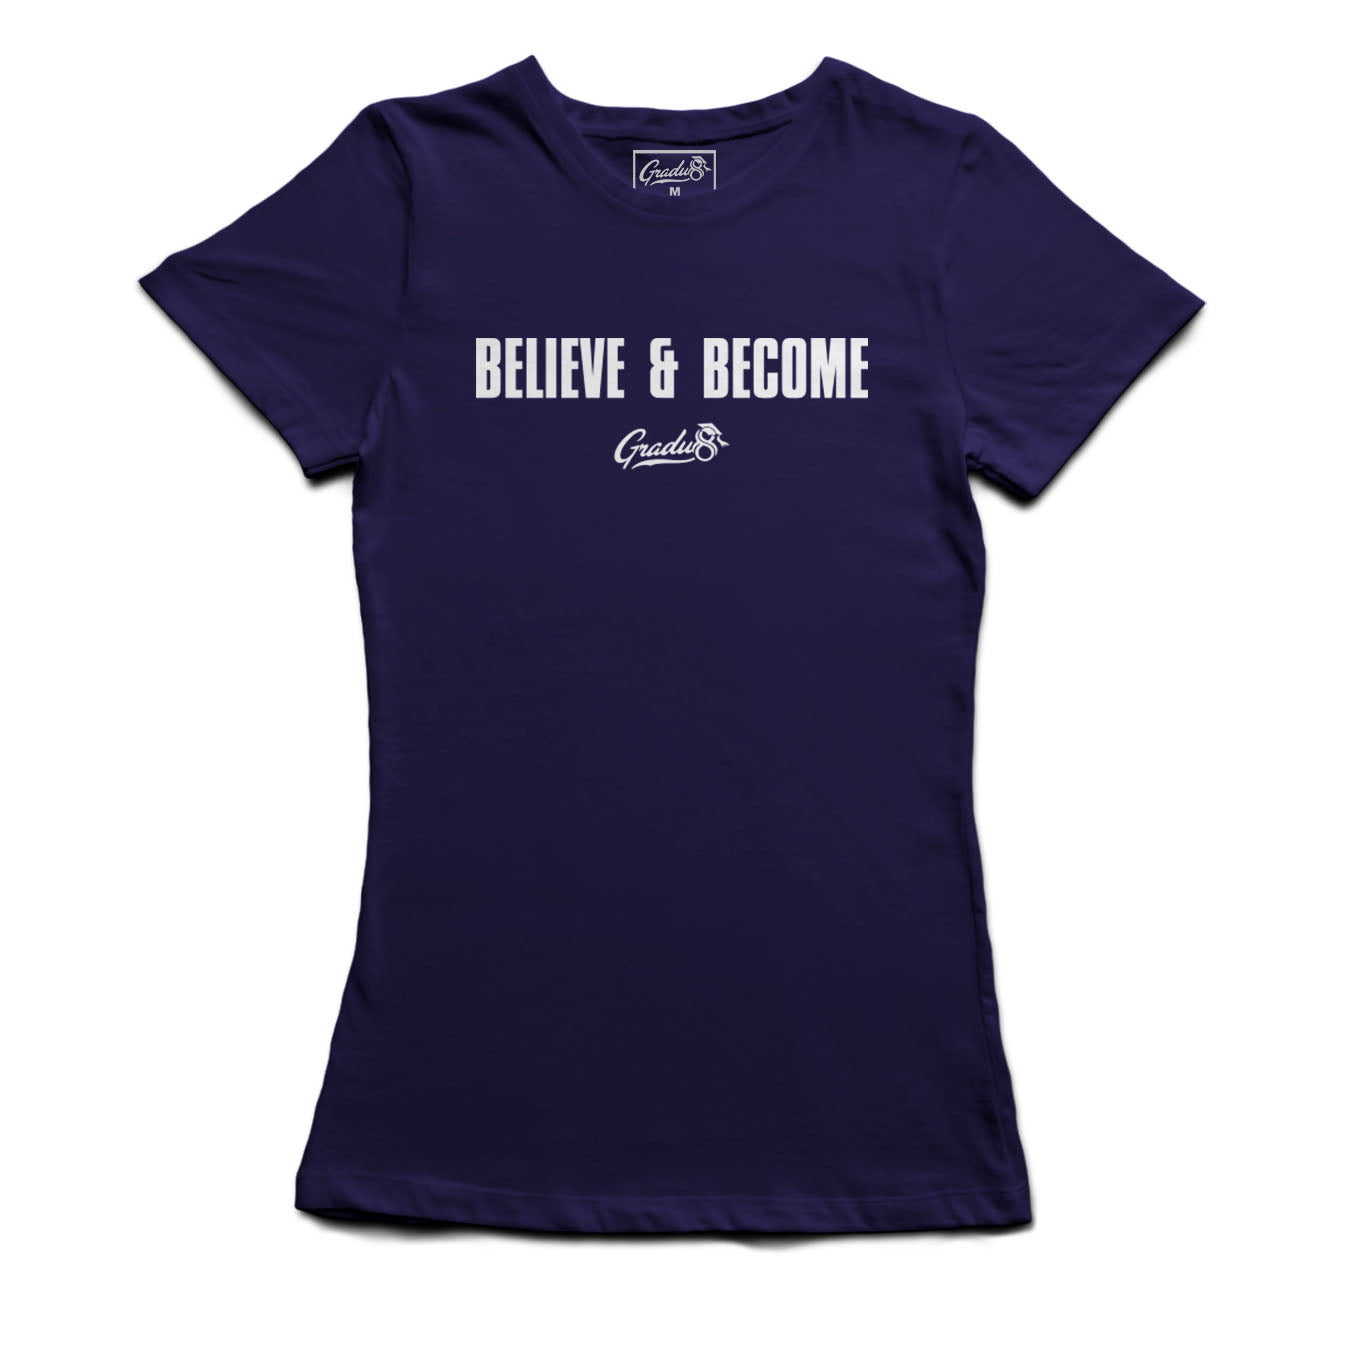 Women's Original Believe & Become T-shirt - Navy Blue